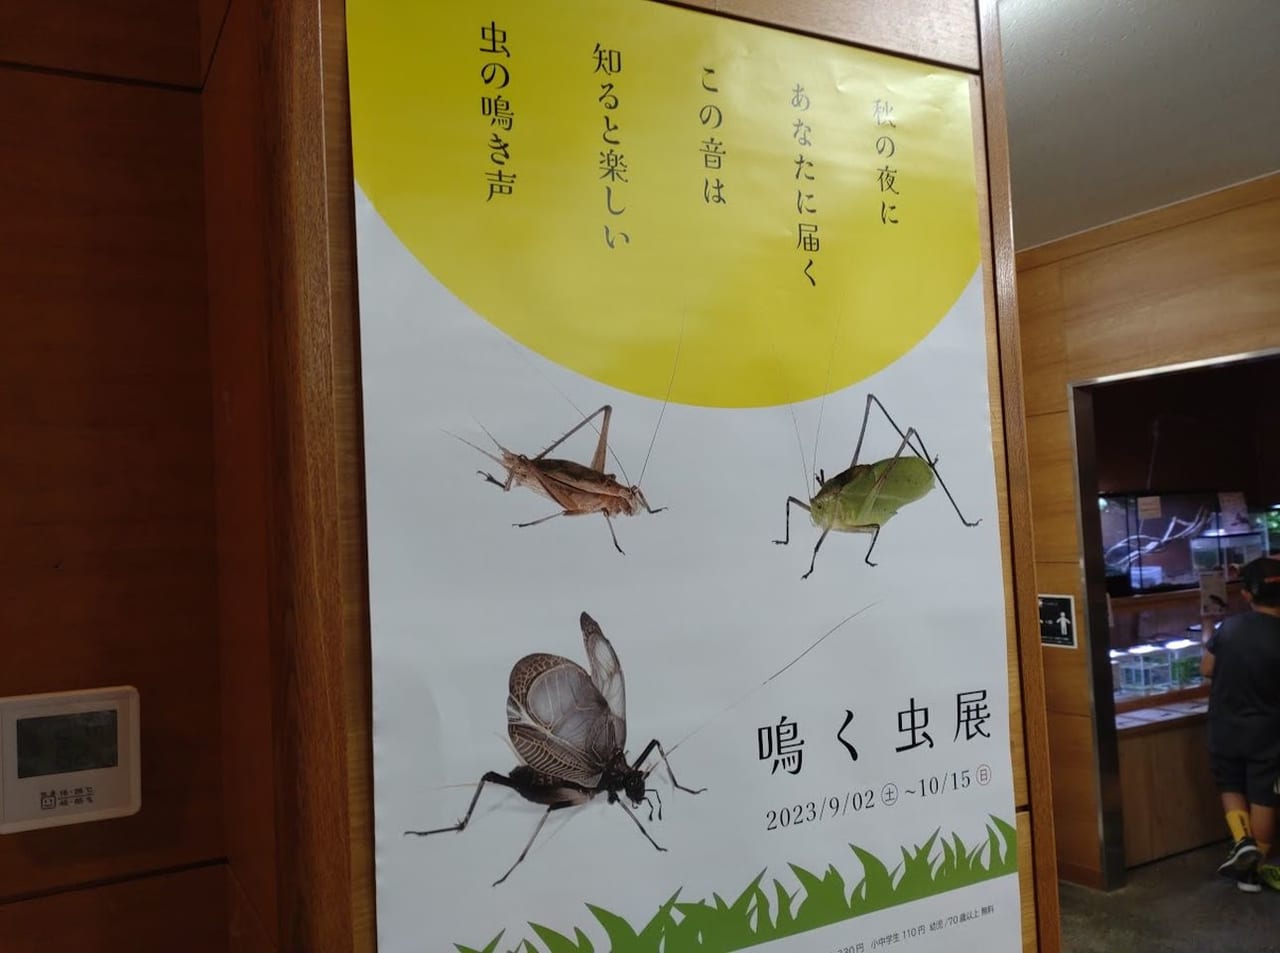 磐田市竜洋昆虫自然観察公園鳴く虫展